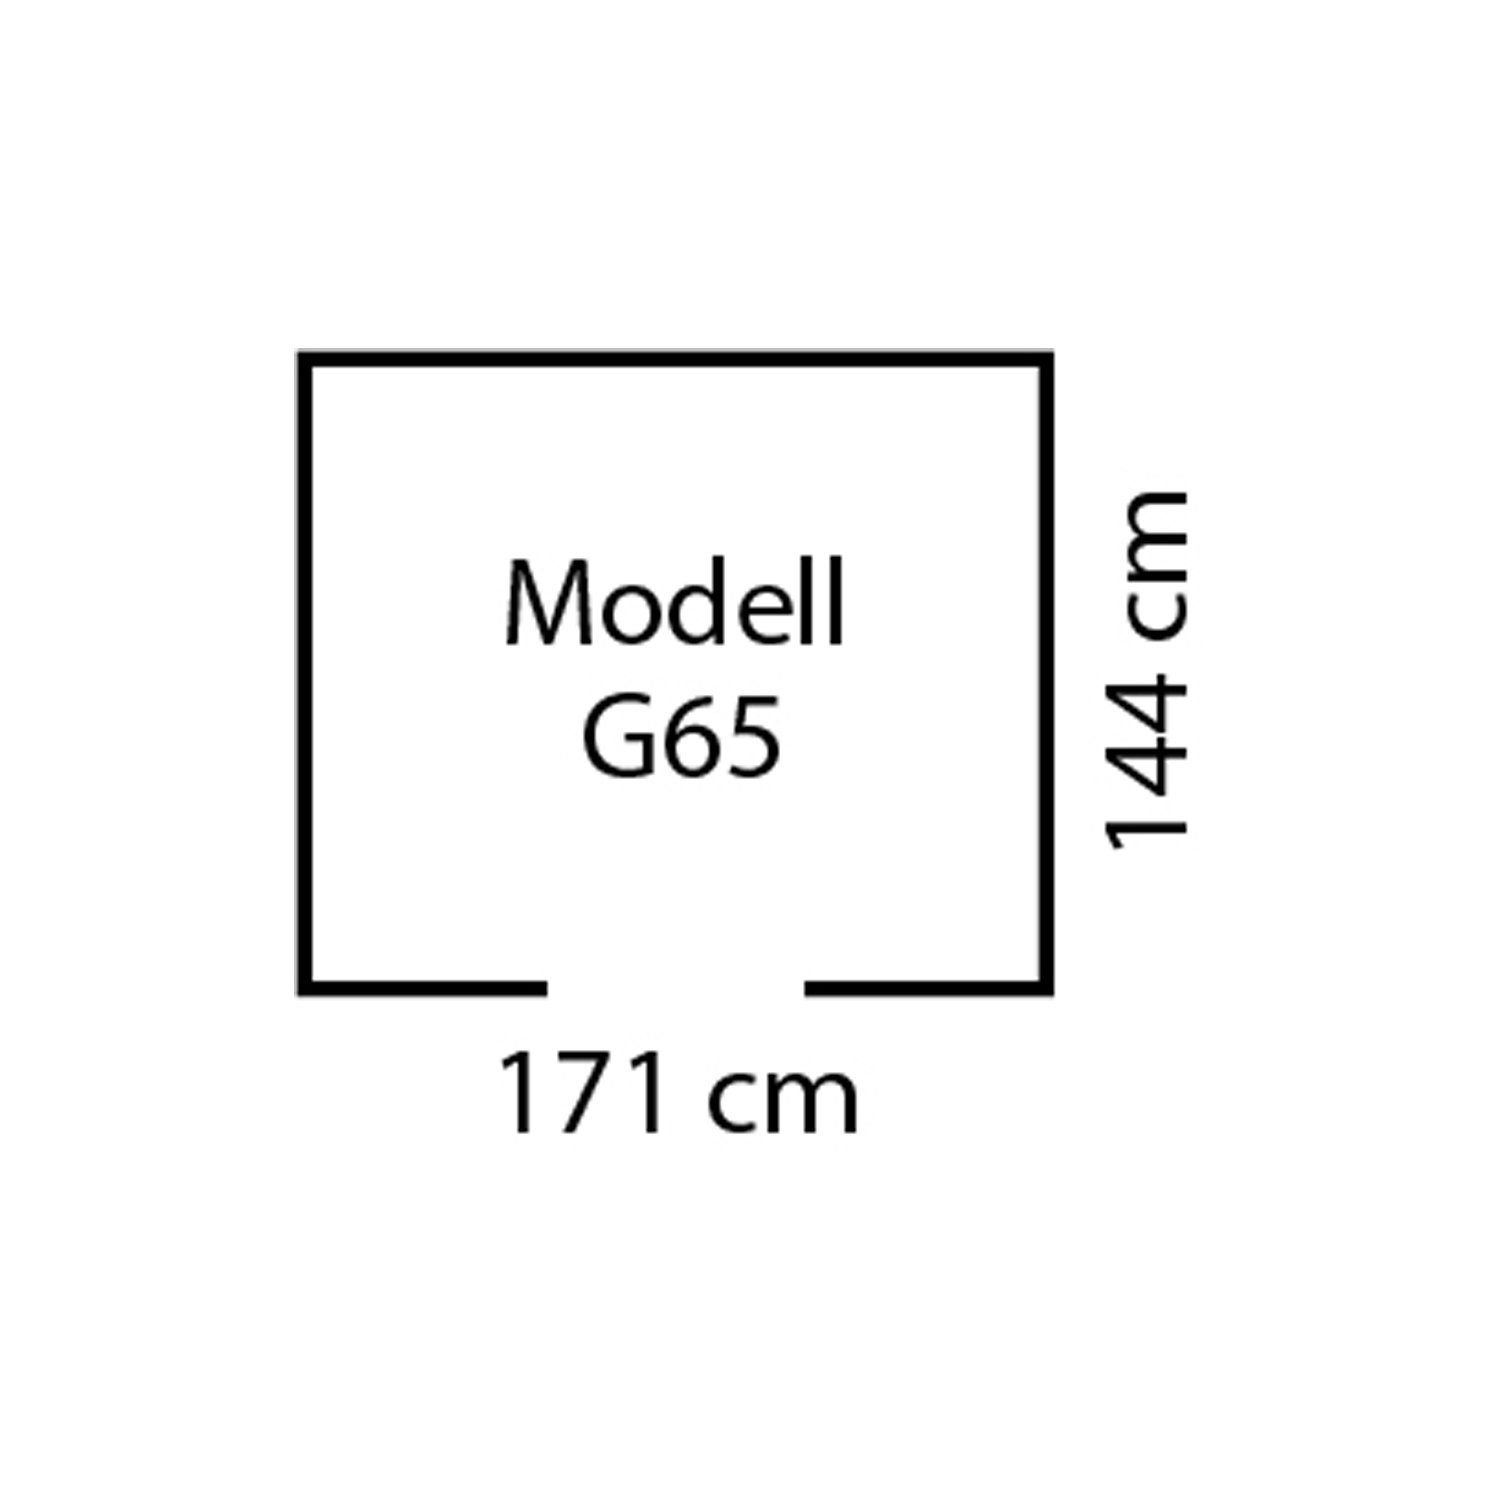 Globel Industries Gerätehaus Metall-Gartenmanager "Dream (2,83 m) 65" anthrazit